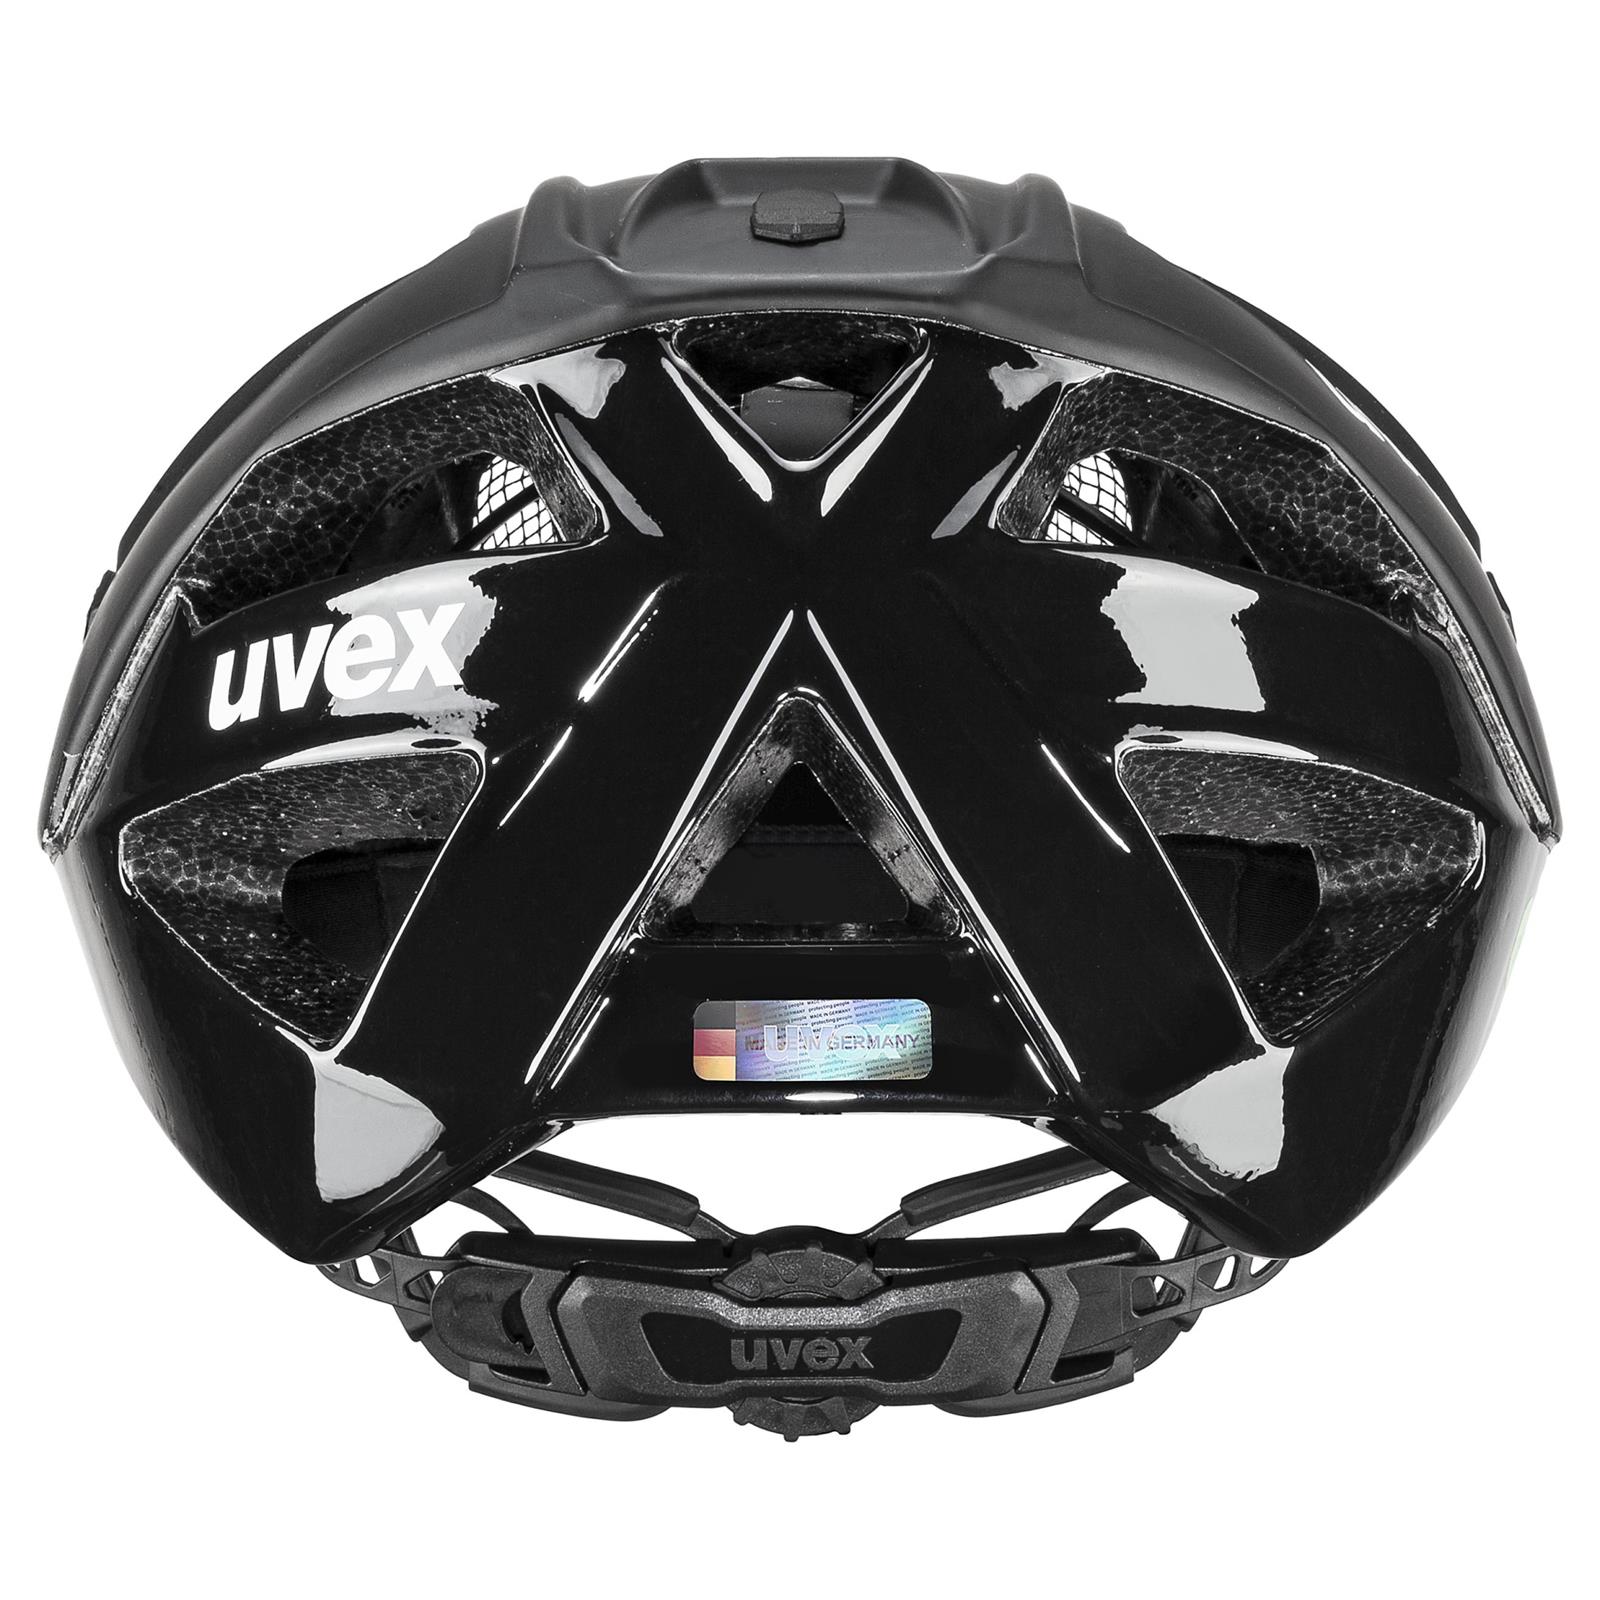 UVEX Quatro Cc All Black (s4100260600)